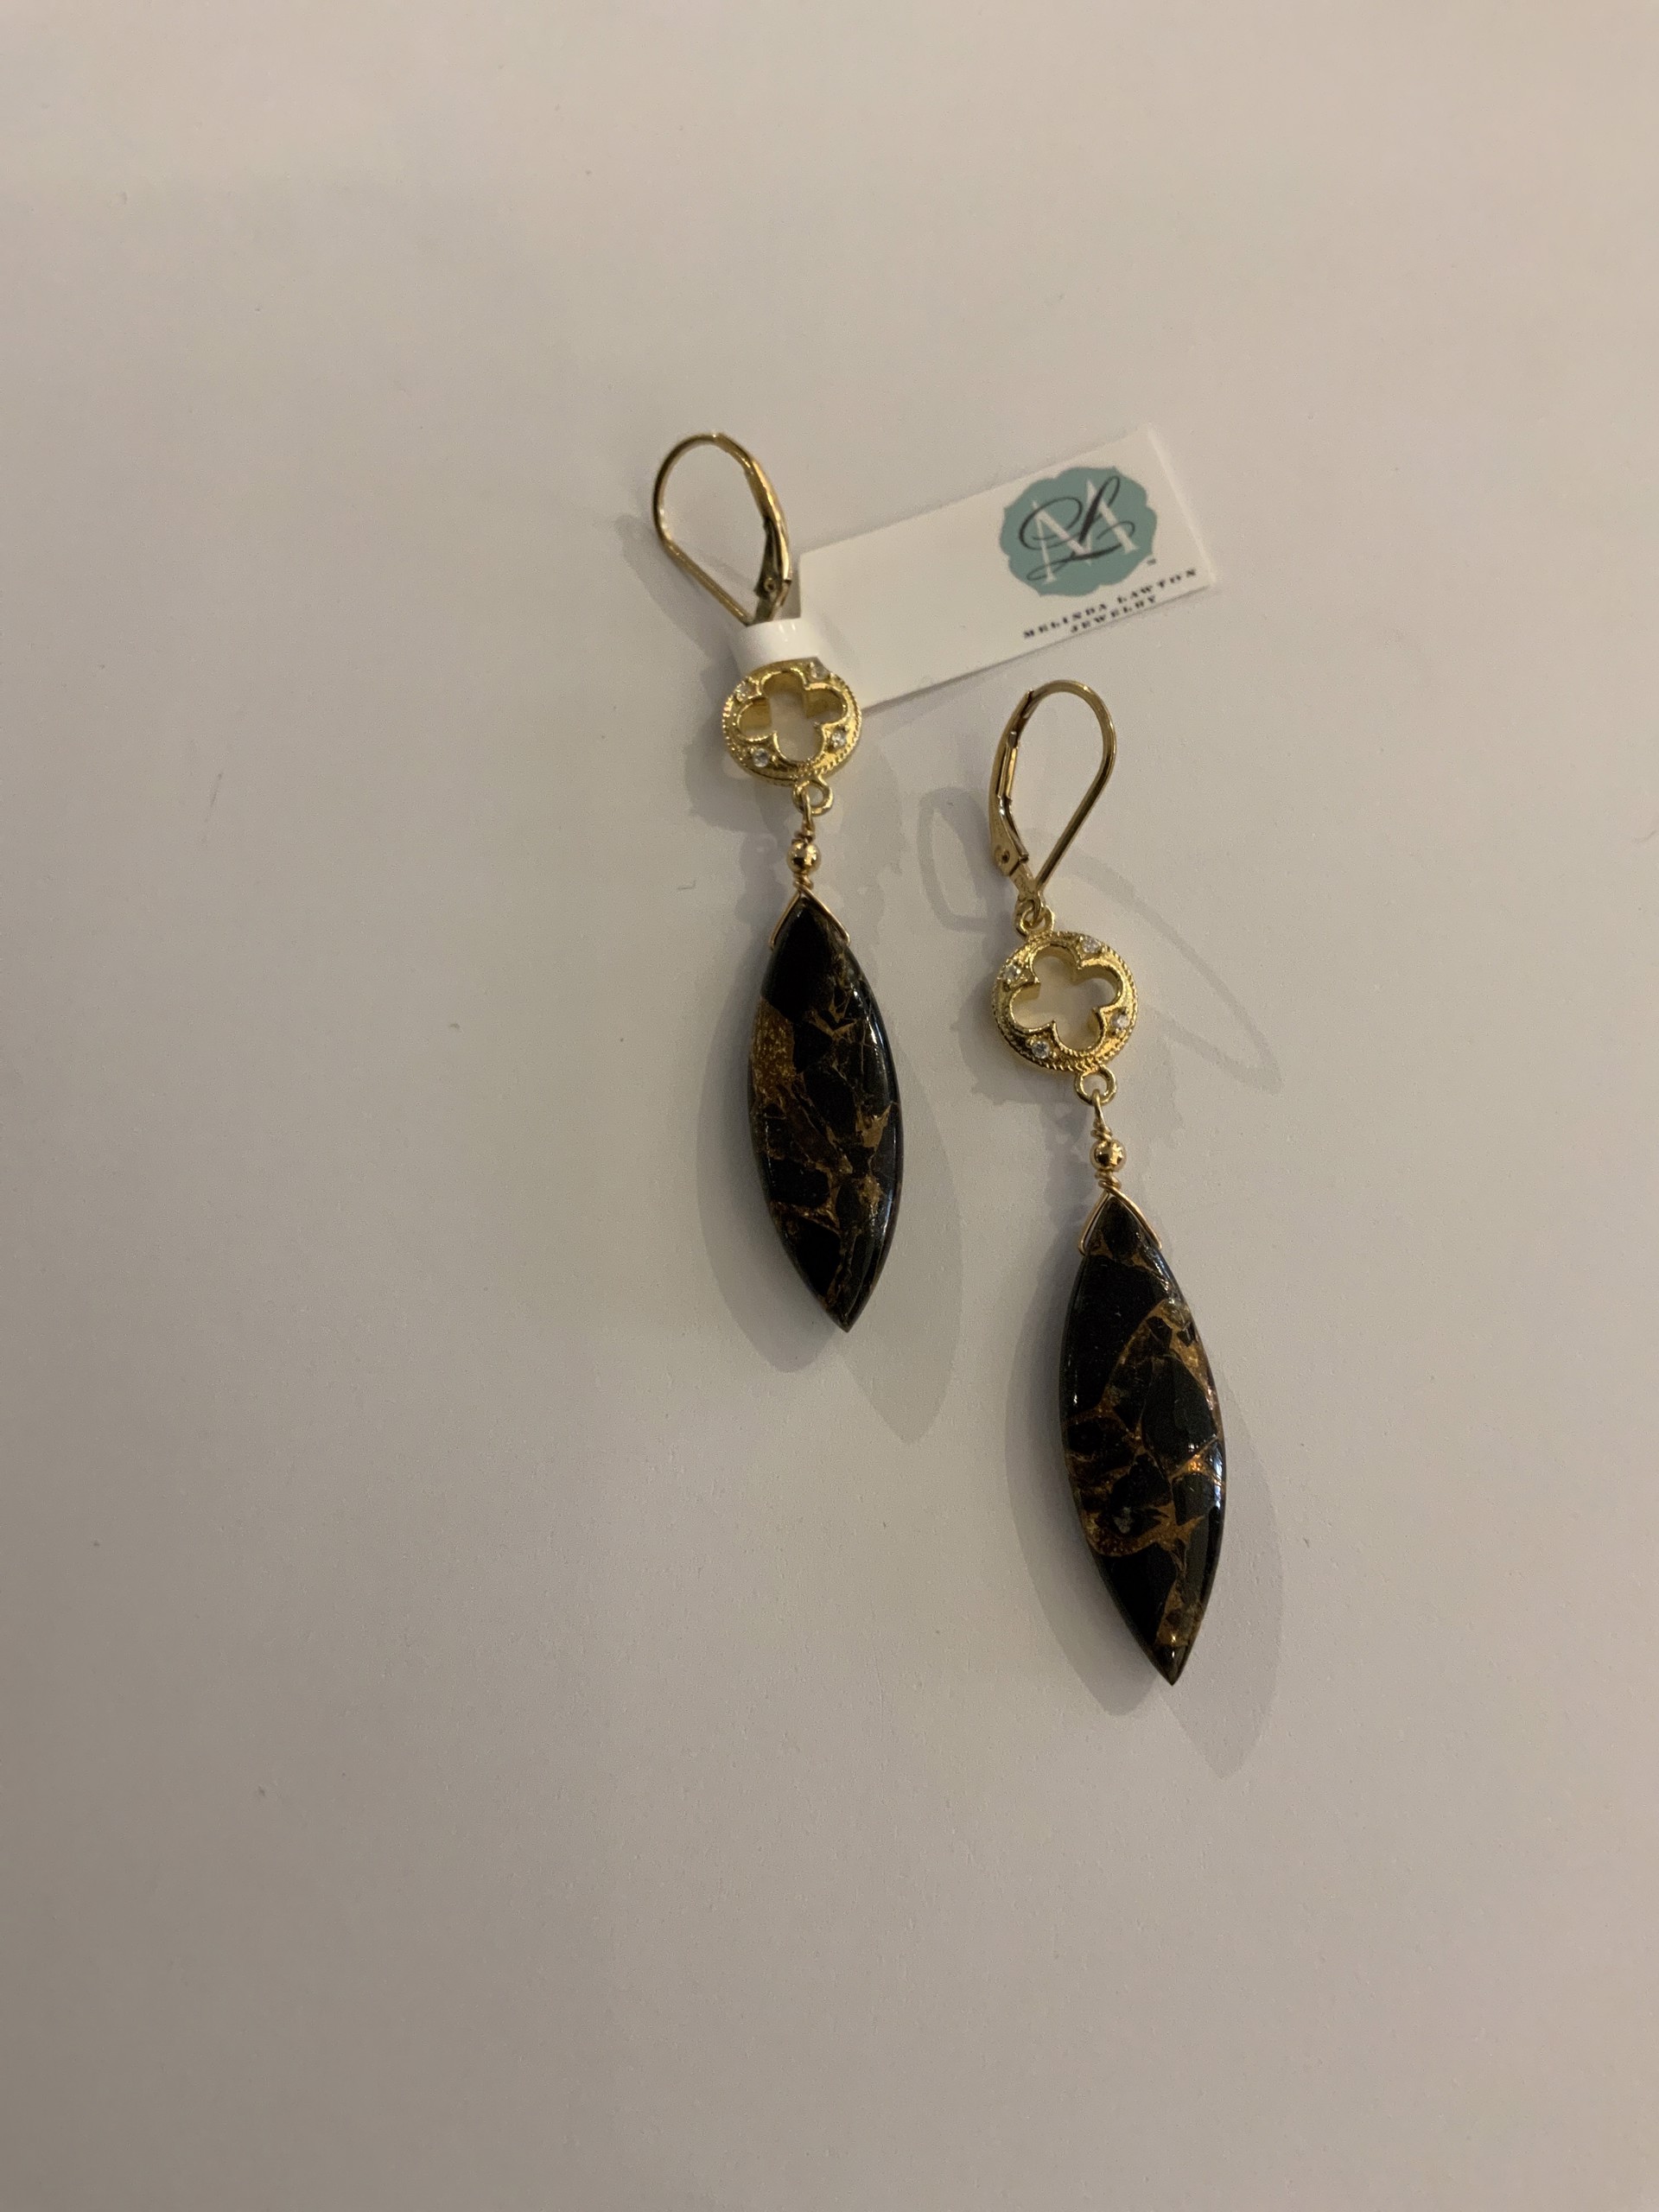 Black Obsidian earrings by Melinda Lawton Jewelry